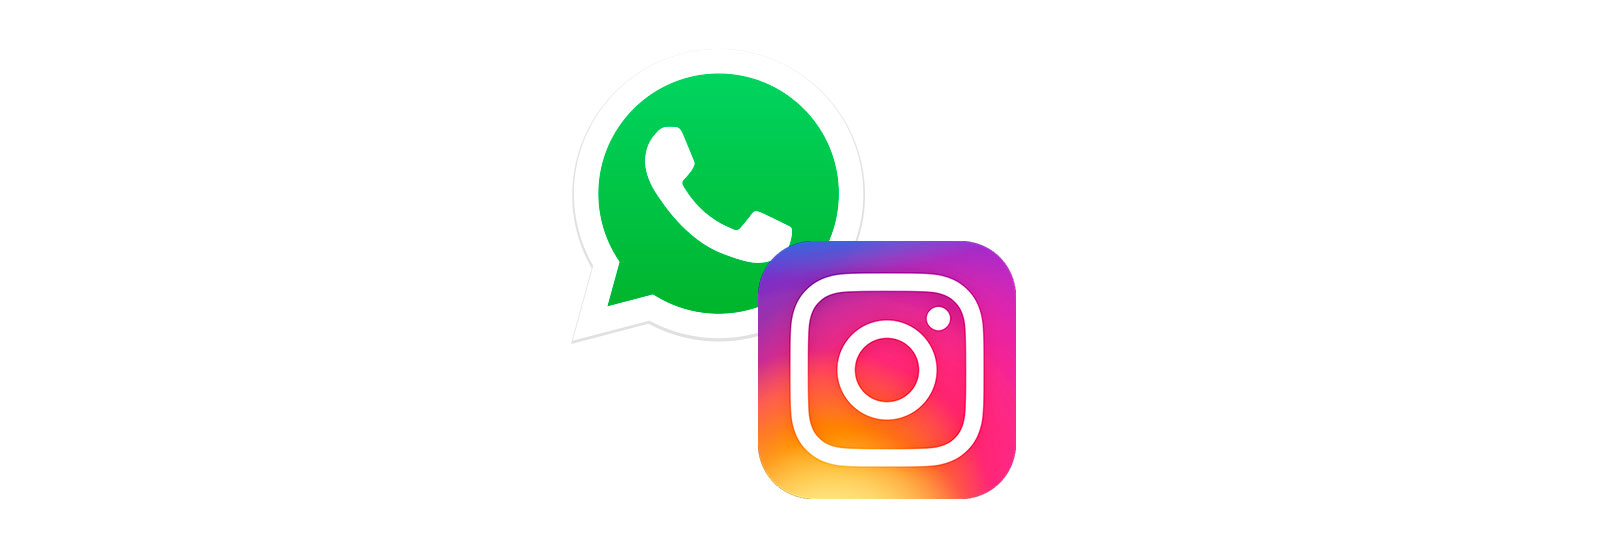 Como Recuperar a Senha do Instagram pelo WhatsApp e Recuperar uma Conta Suspensa